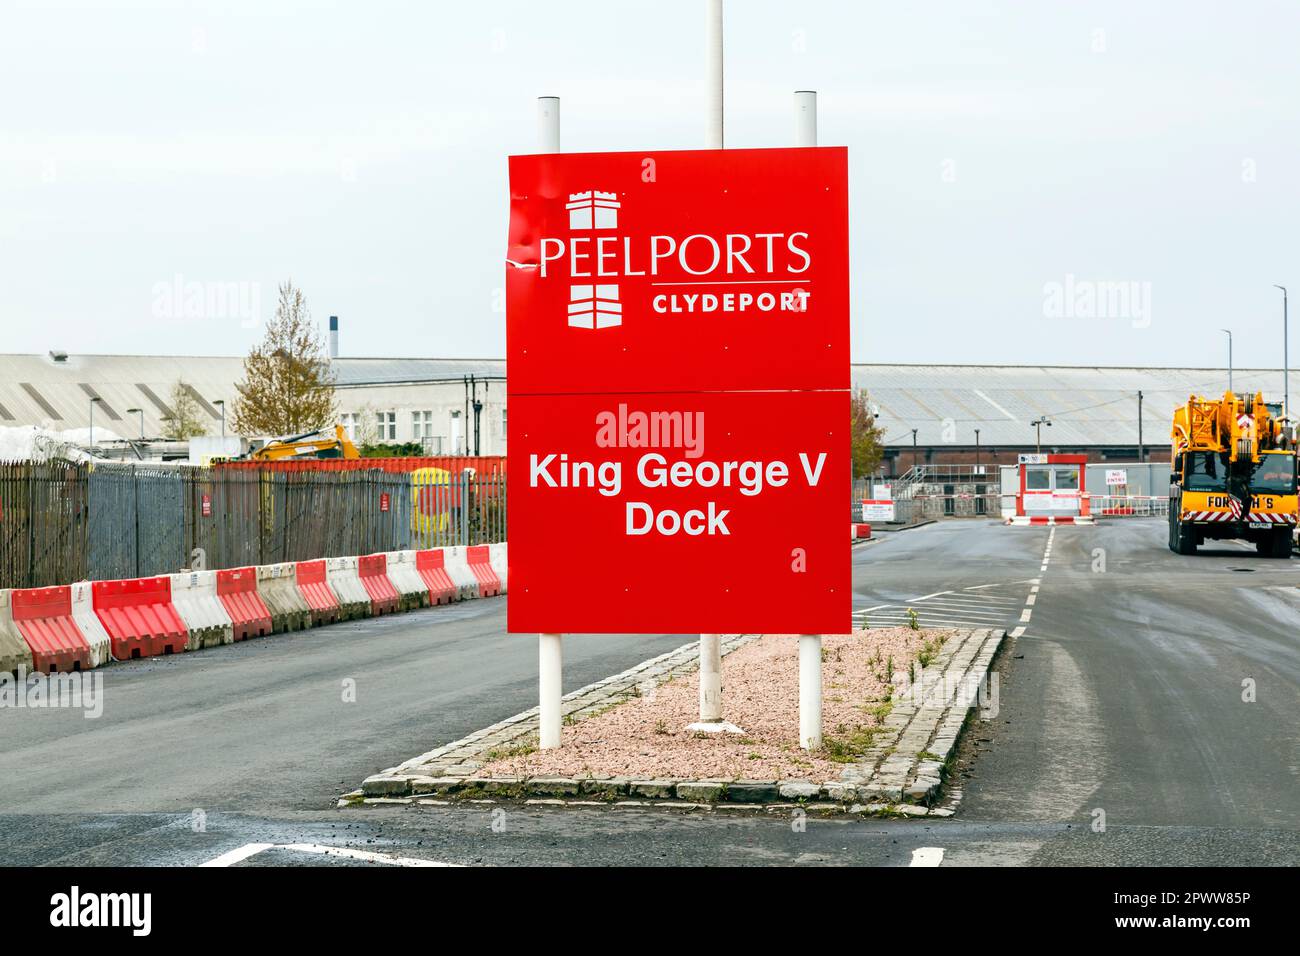 King George V Dock sign Glasgow, Scotland, UK, Europe Stock Photo